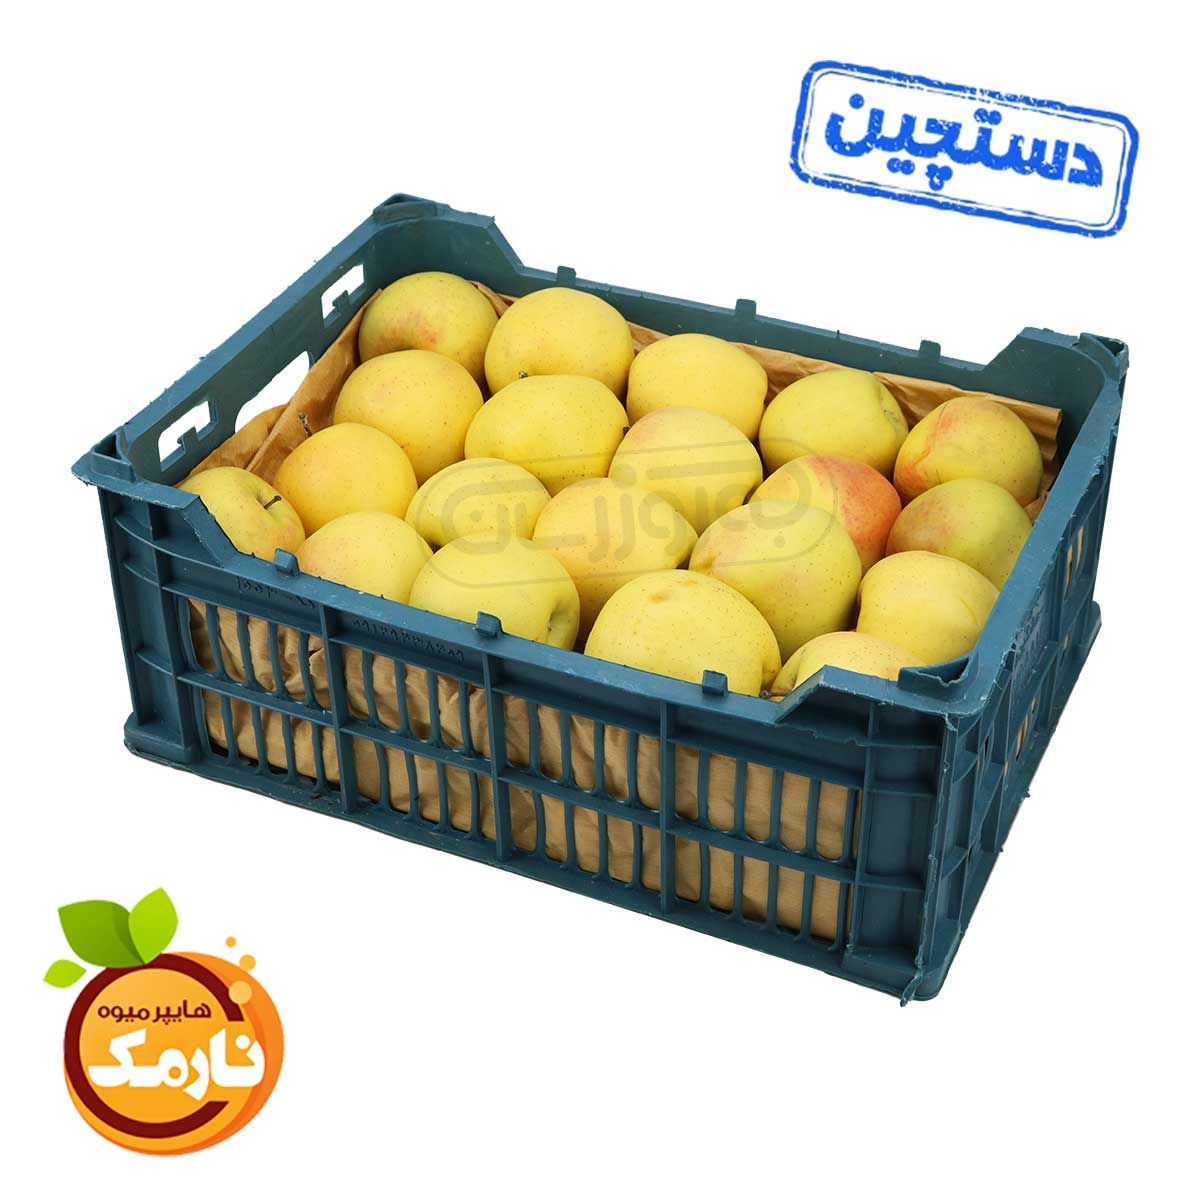 سیب زرد دستچین سبدی هایپر میوه نارمک حدود 5 تا 7 کیلوگرم